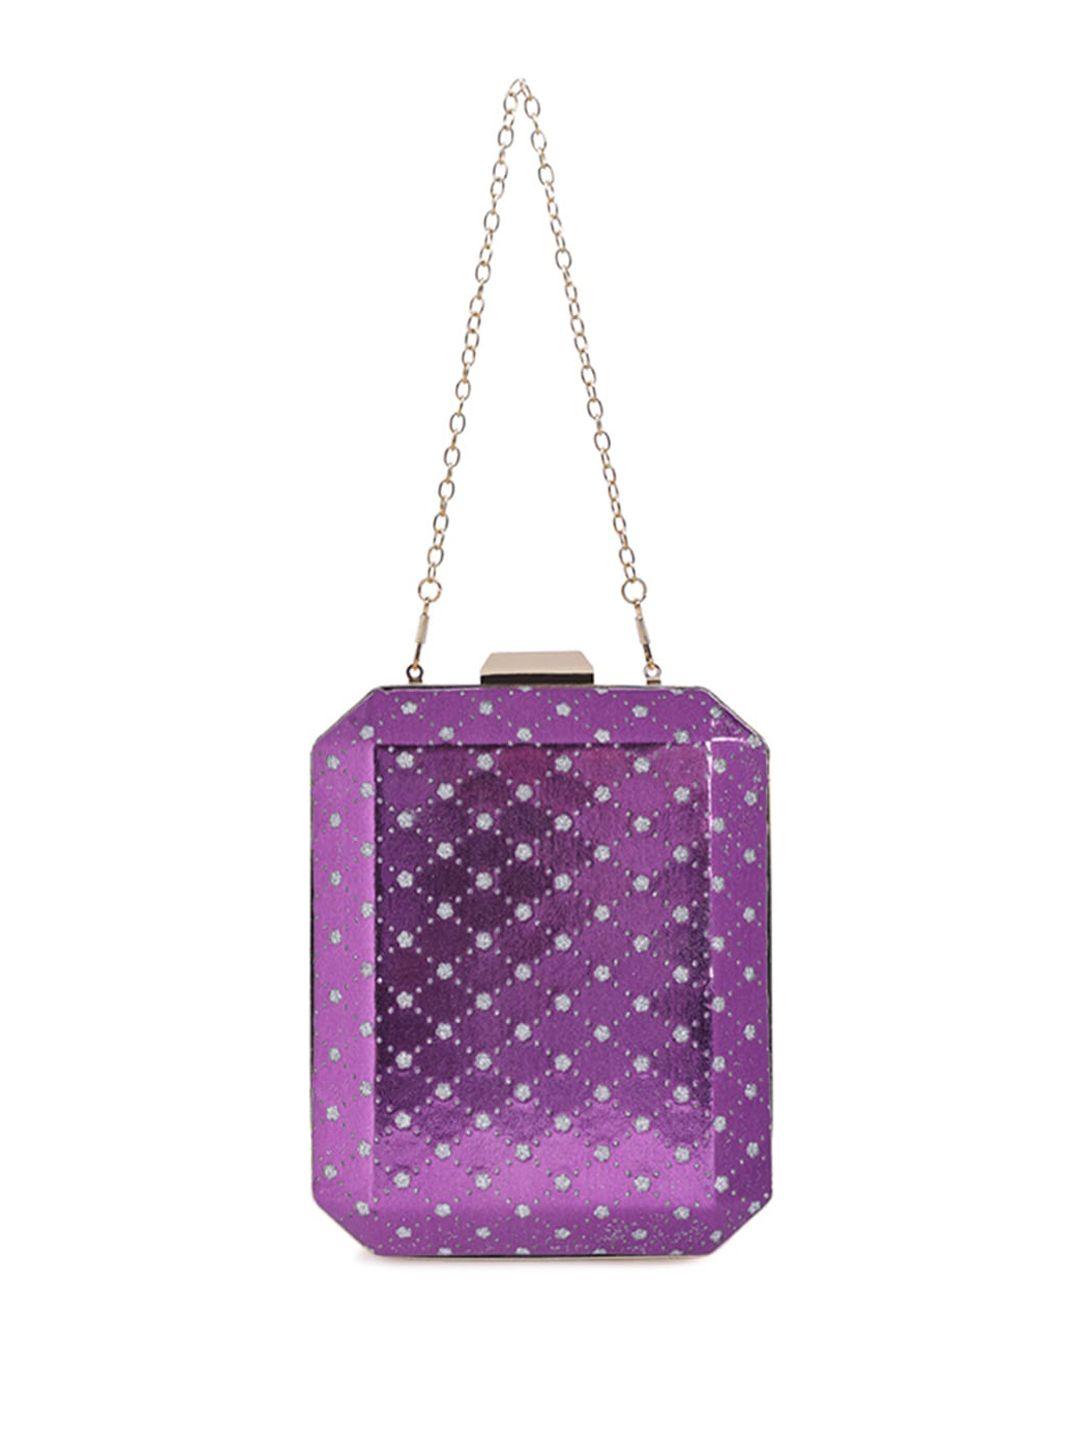 london-rag-purple-printed-sling-bag